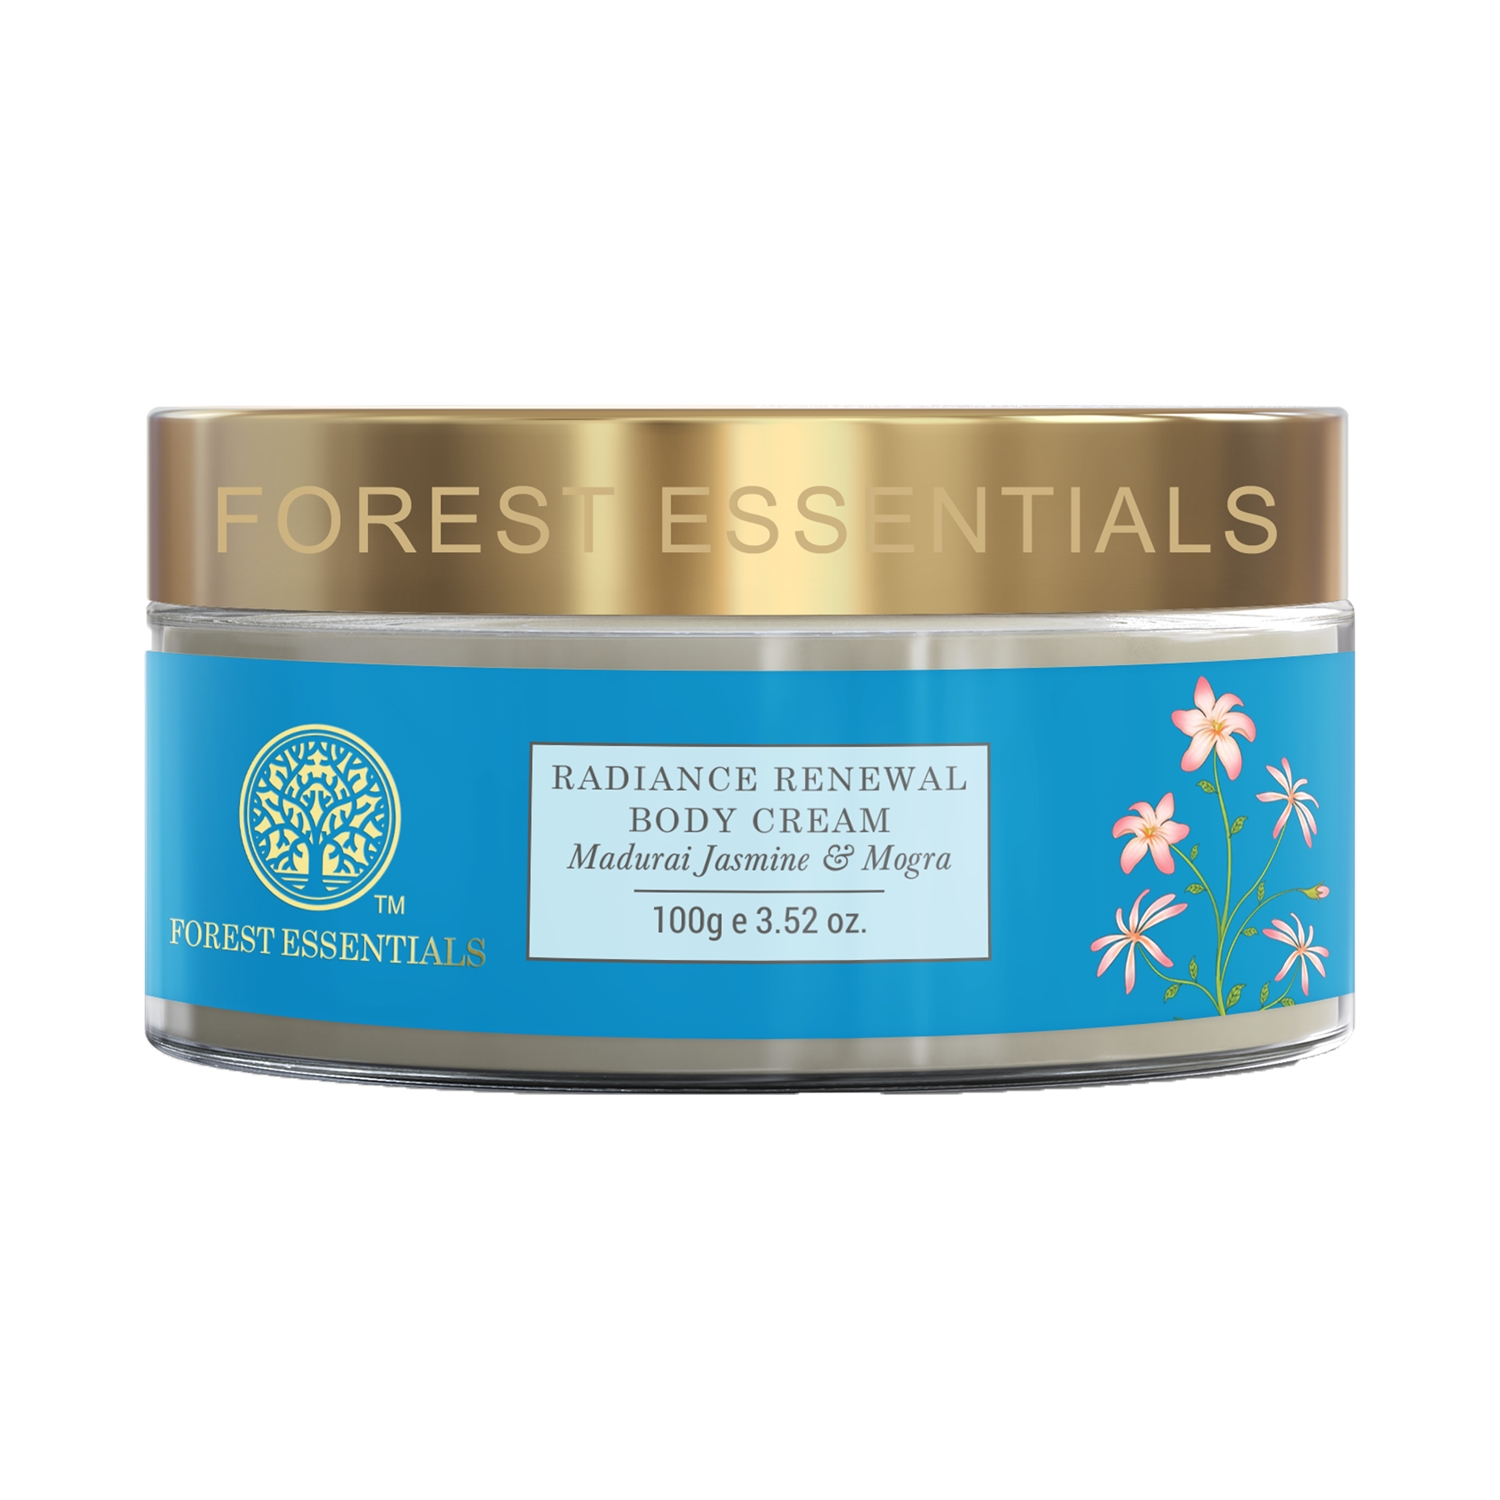 Forest Essentials Madurai Jasmine & Mogra Radiance Renewal Body Cream (100g)